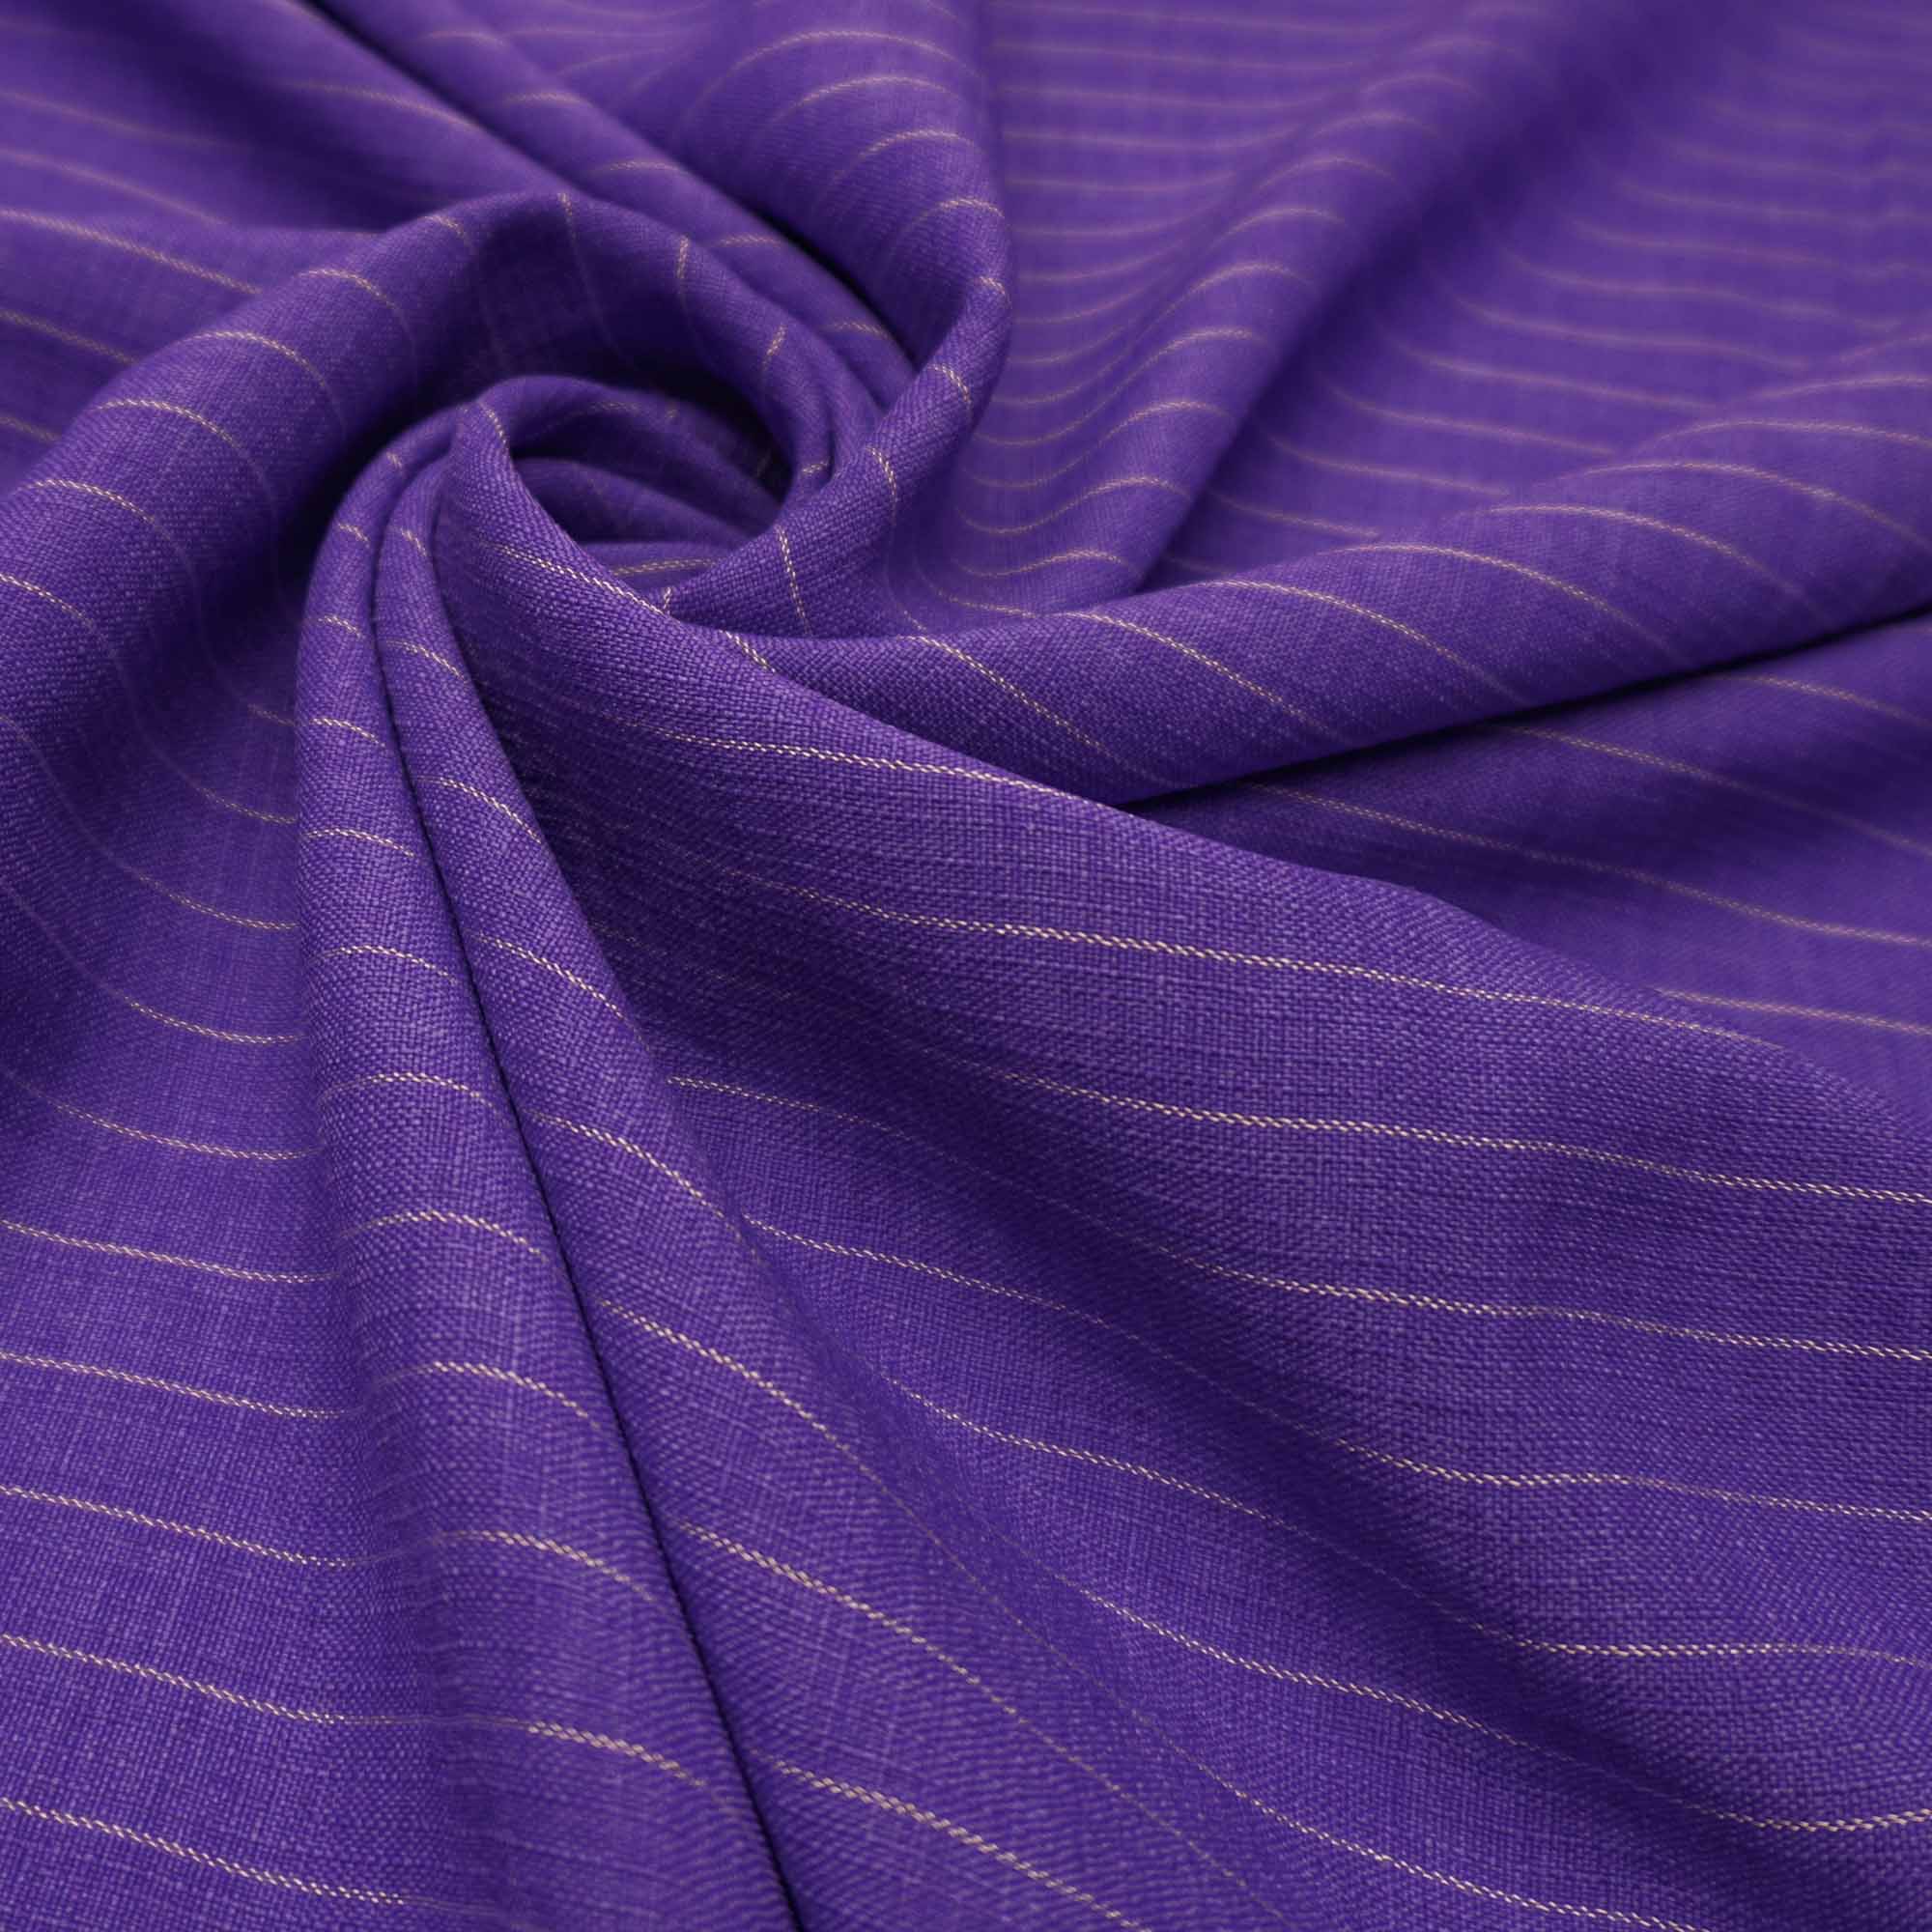 Tecido poliester com textura de linho risca de giz violeta